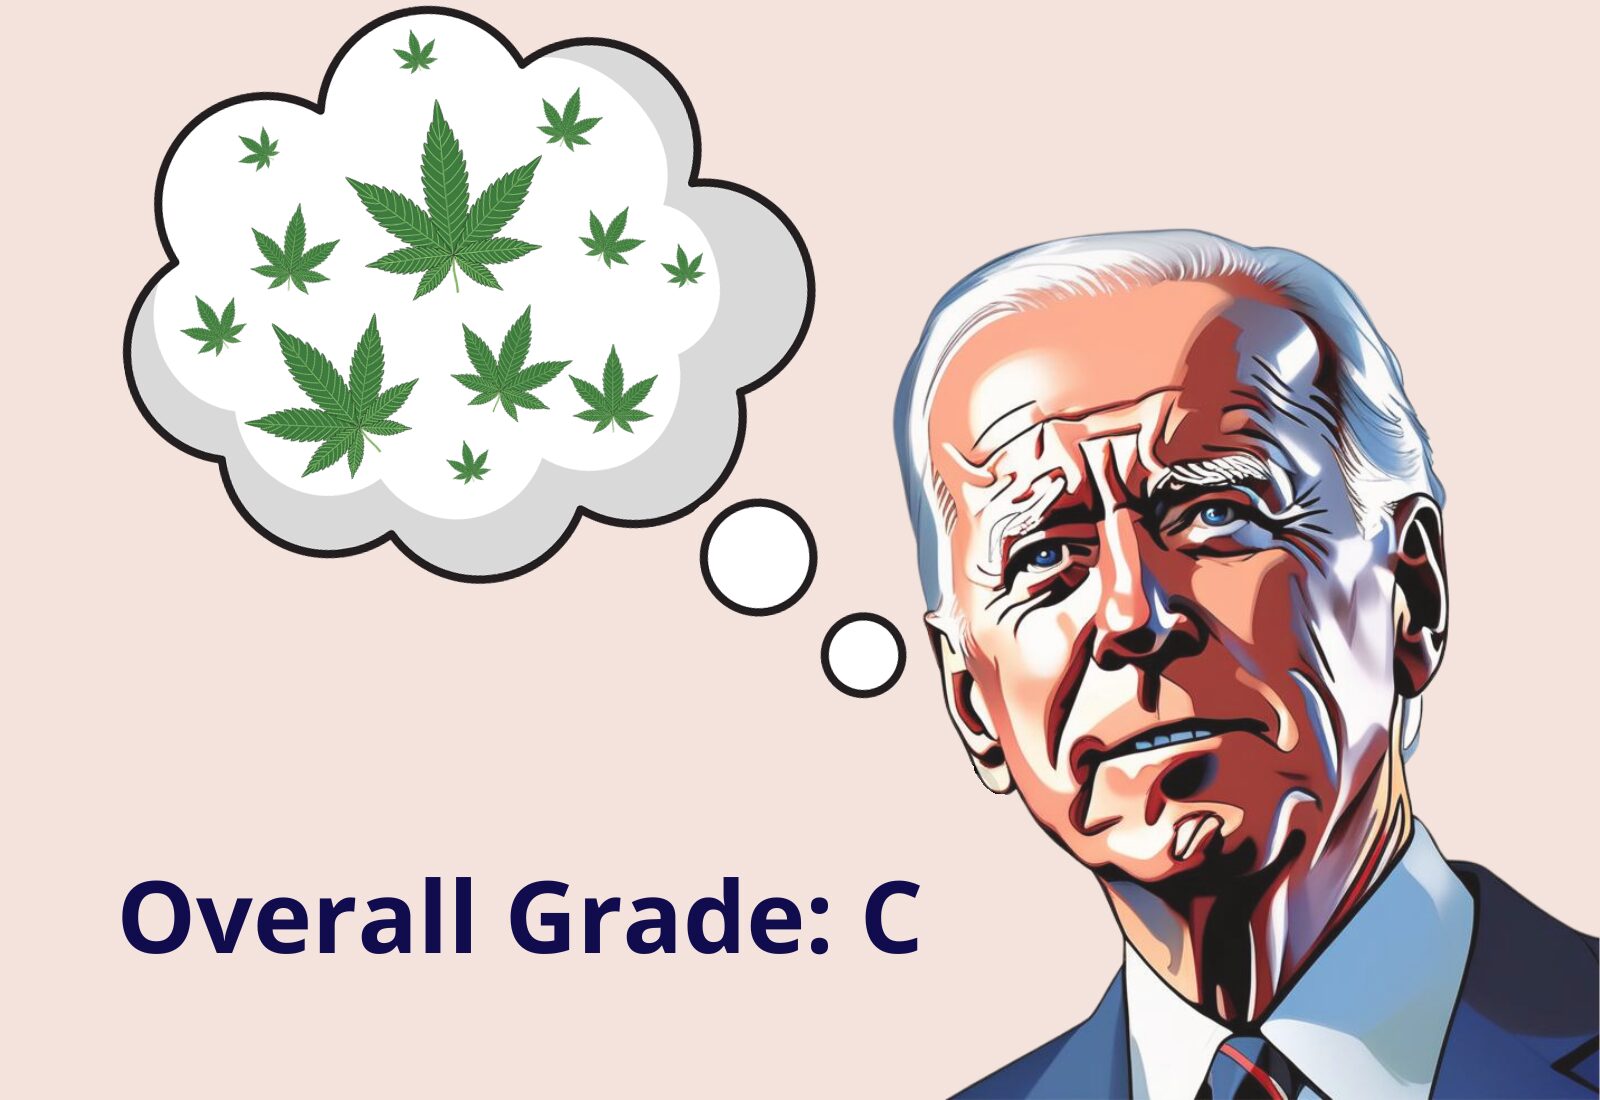 Calificando a los candidatos presidenciales sobre cannabis: Joe Biden